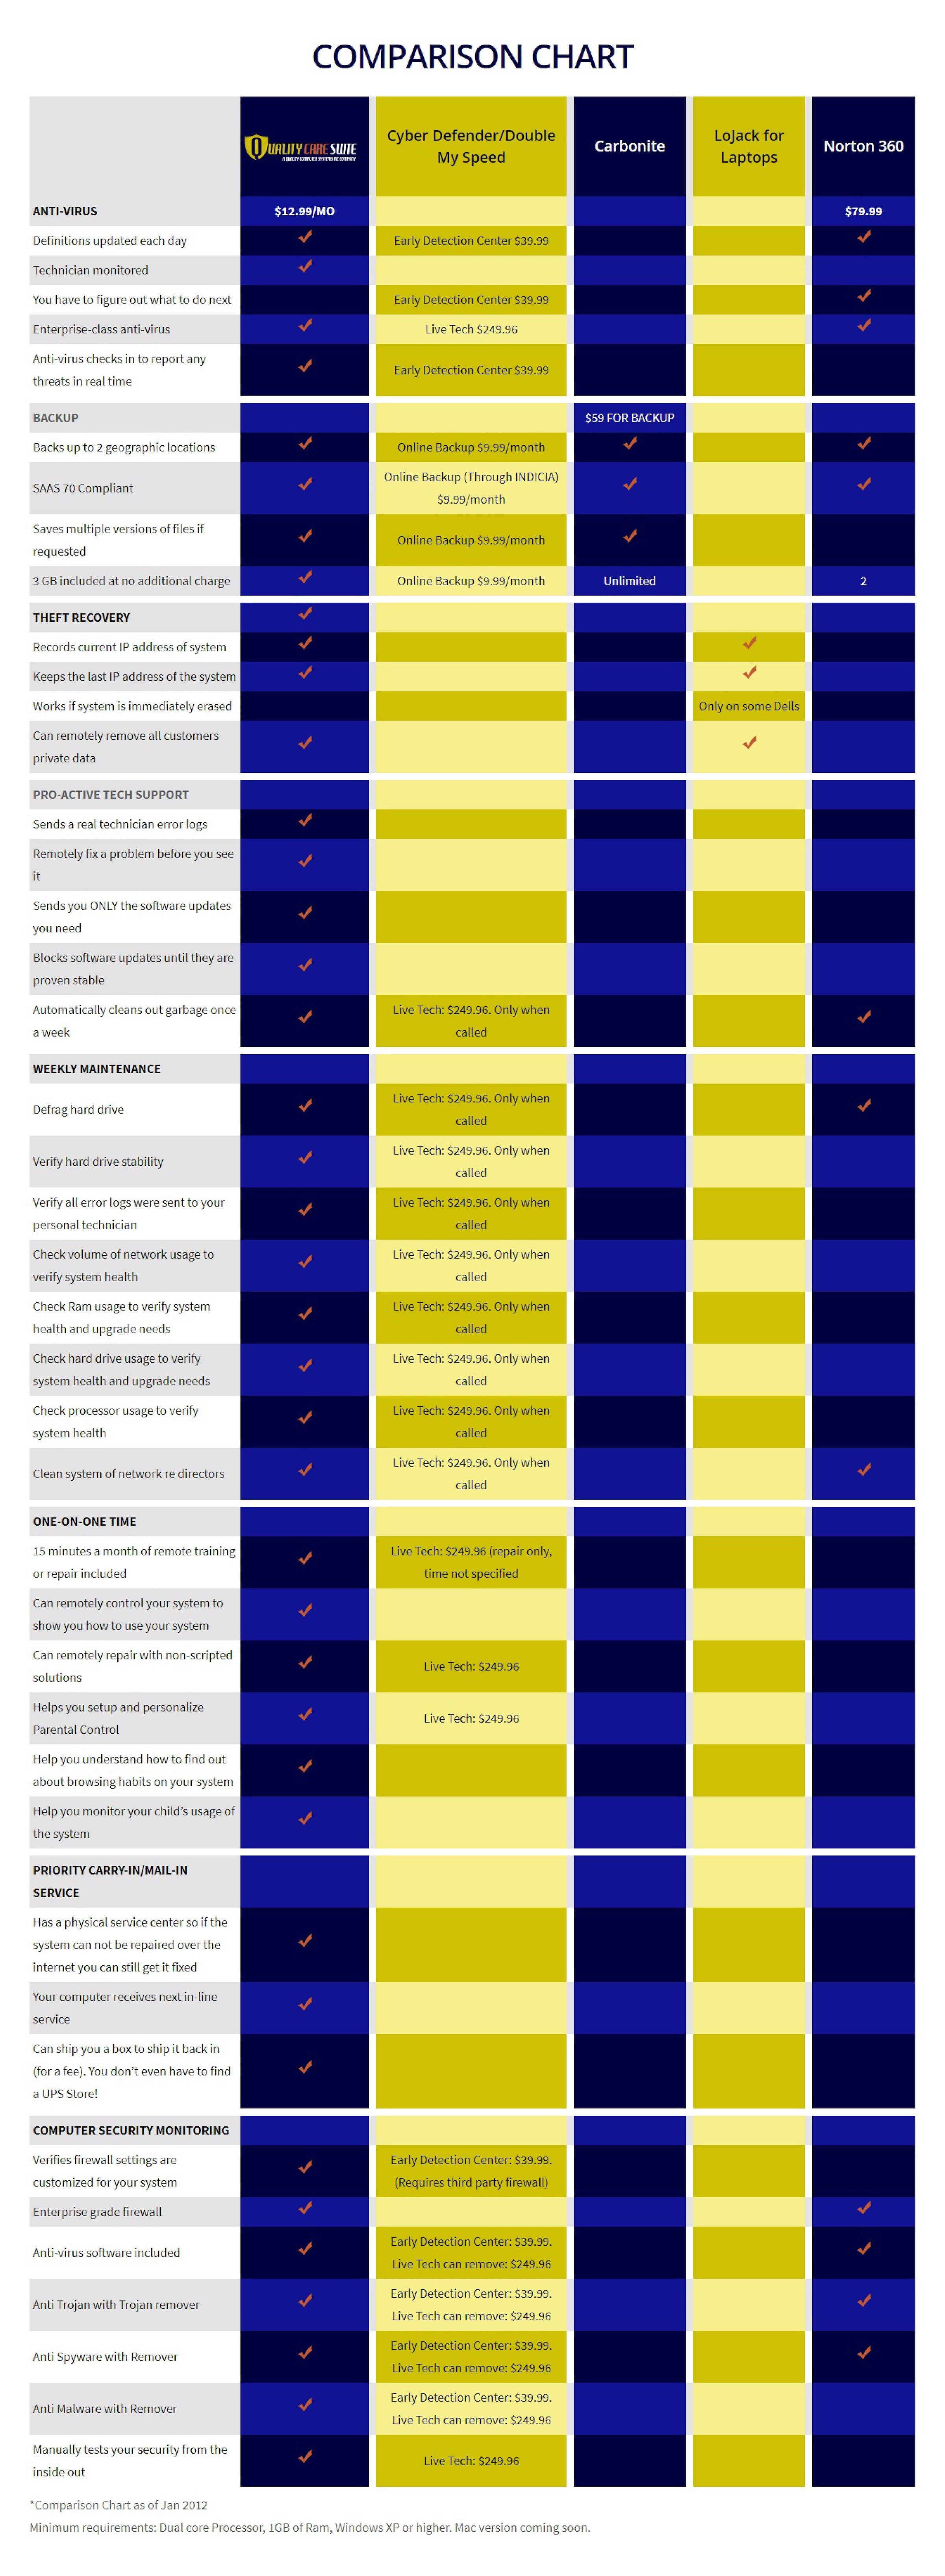 quality care suite comparison chart